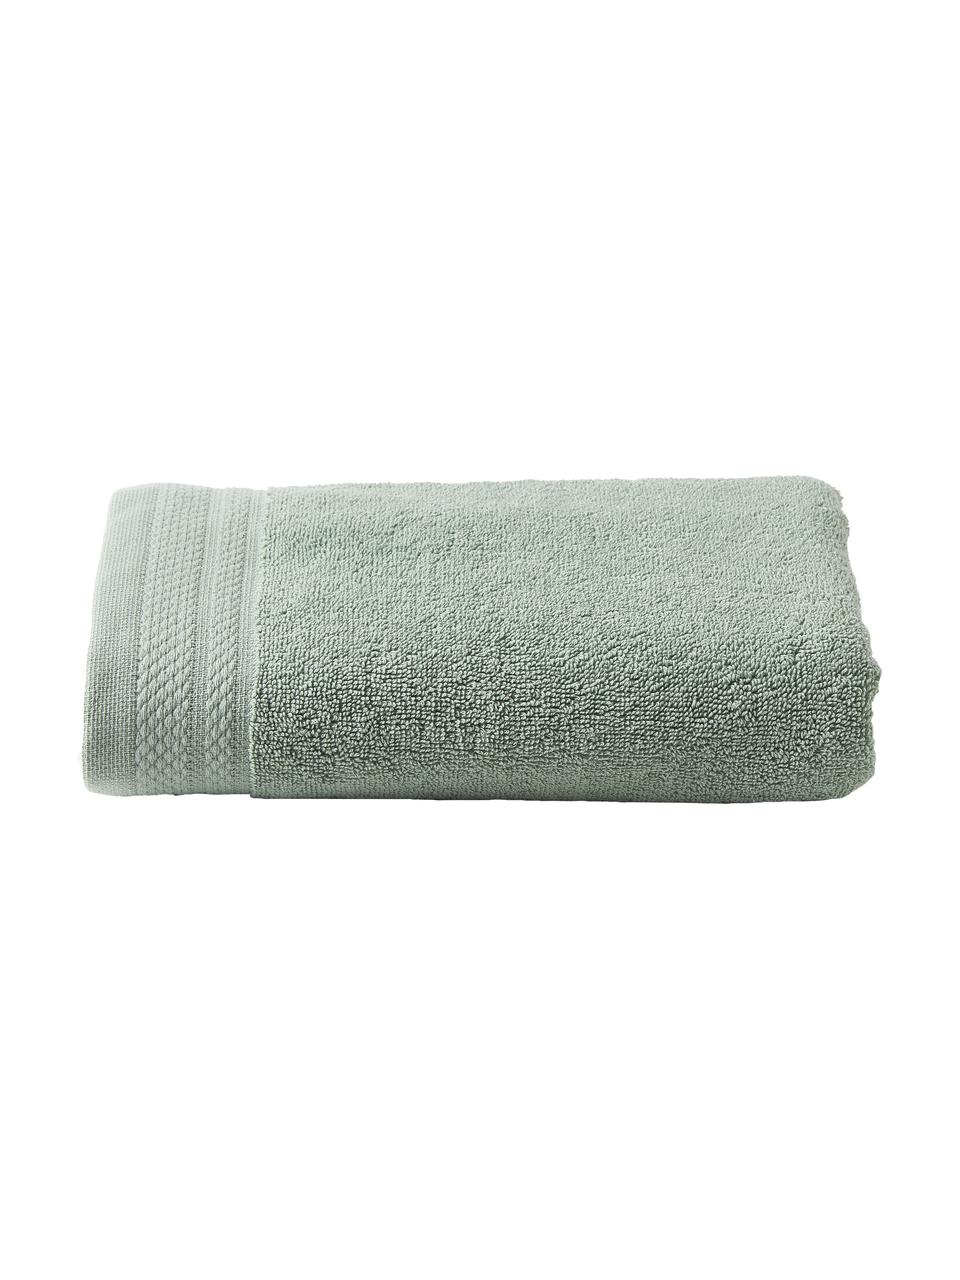 Asciugamano in varie misure Premium, 100% cotone organico certificato GOTS (da GCL International, GCL-300517).
Qualità pesante, 600 g/m², Verde salvia, Asciugamano, Larg. 50 x Lung. 100 cm